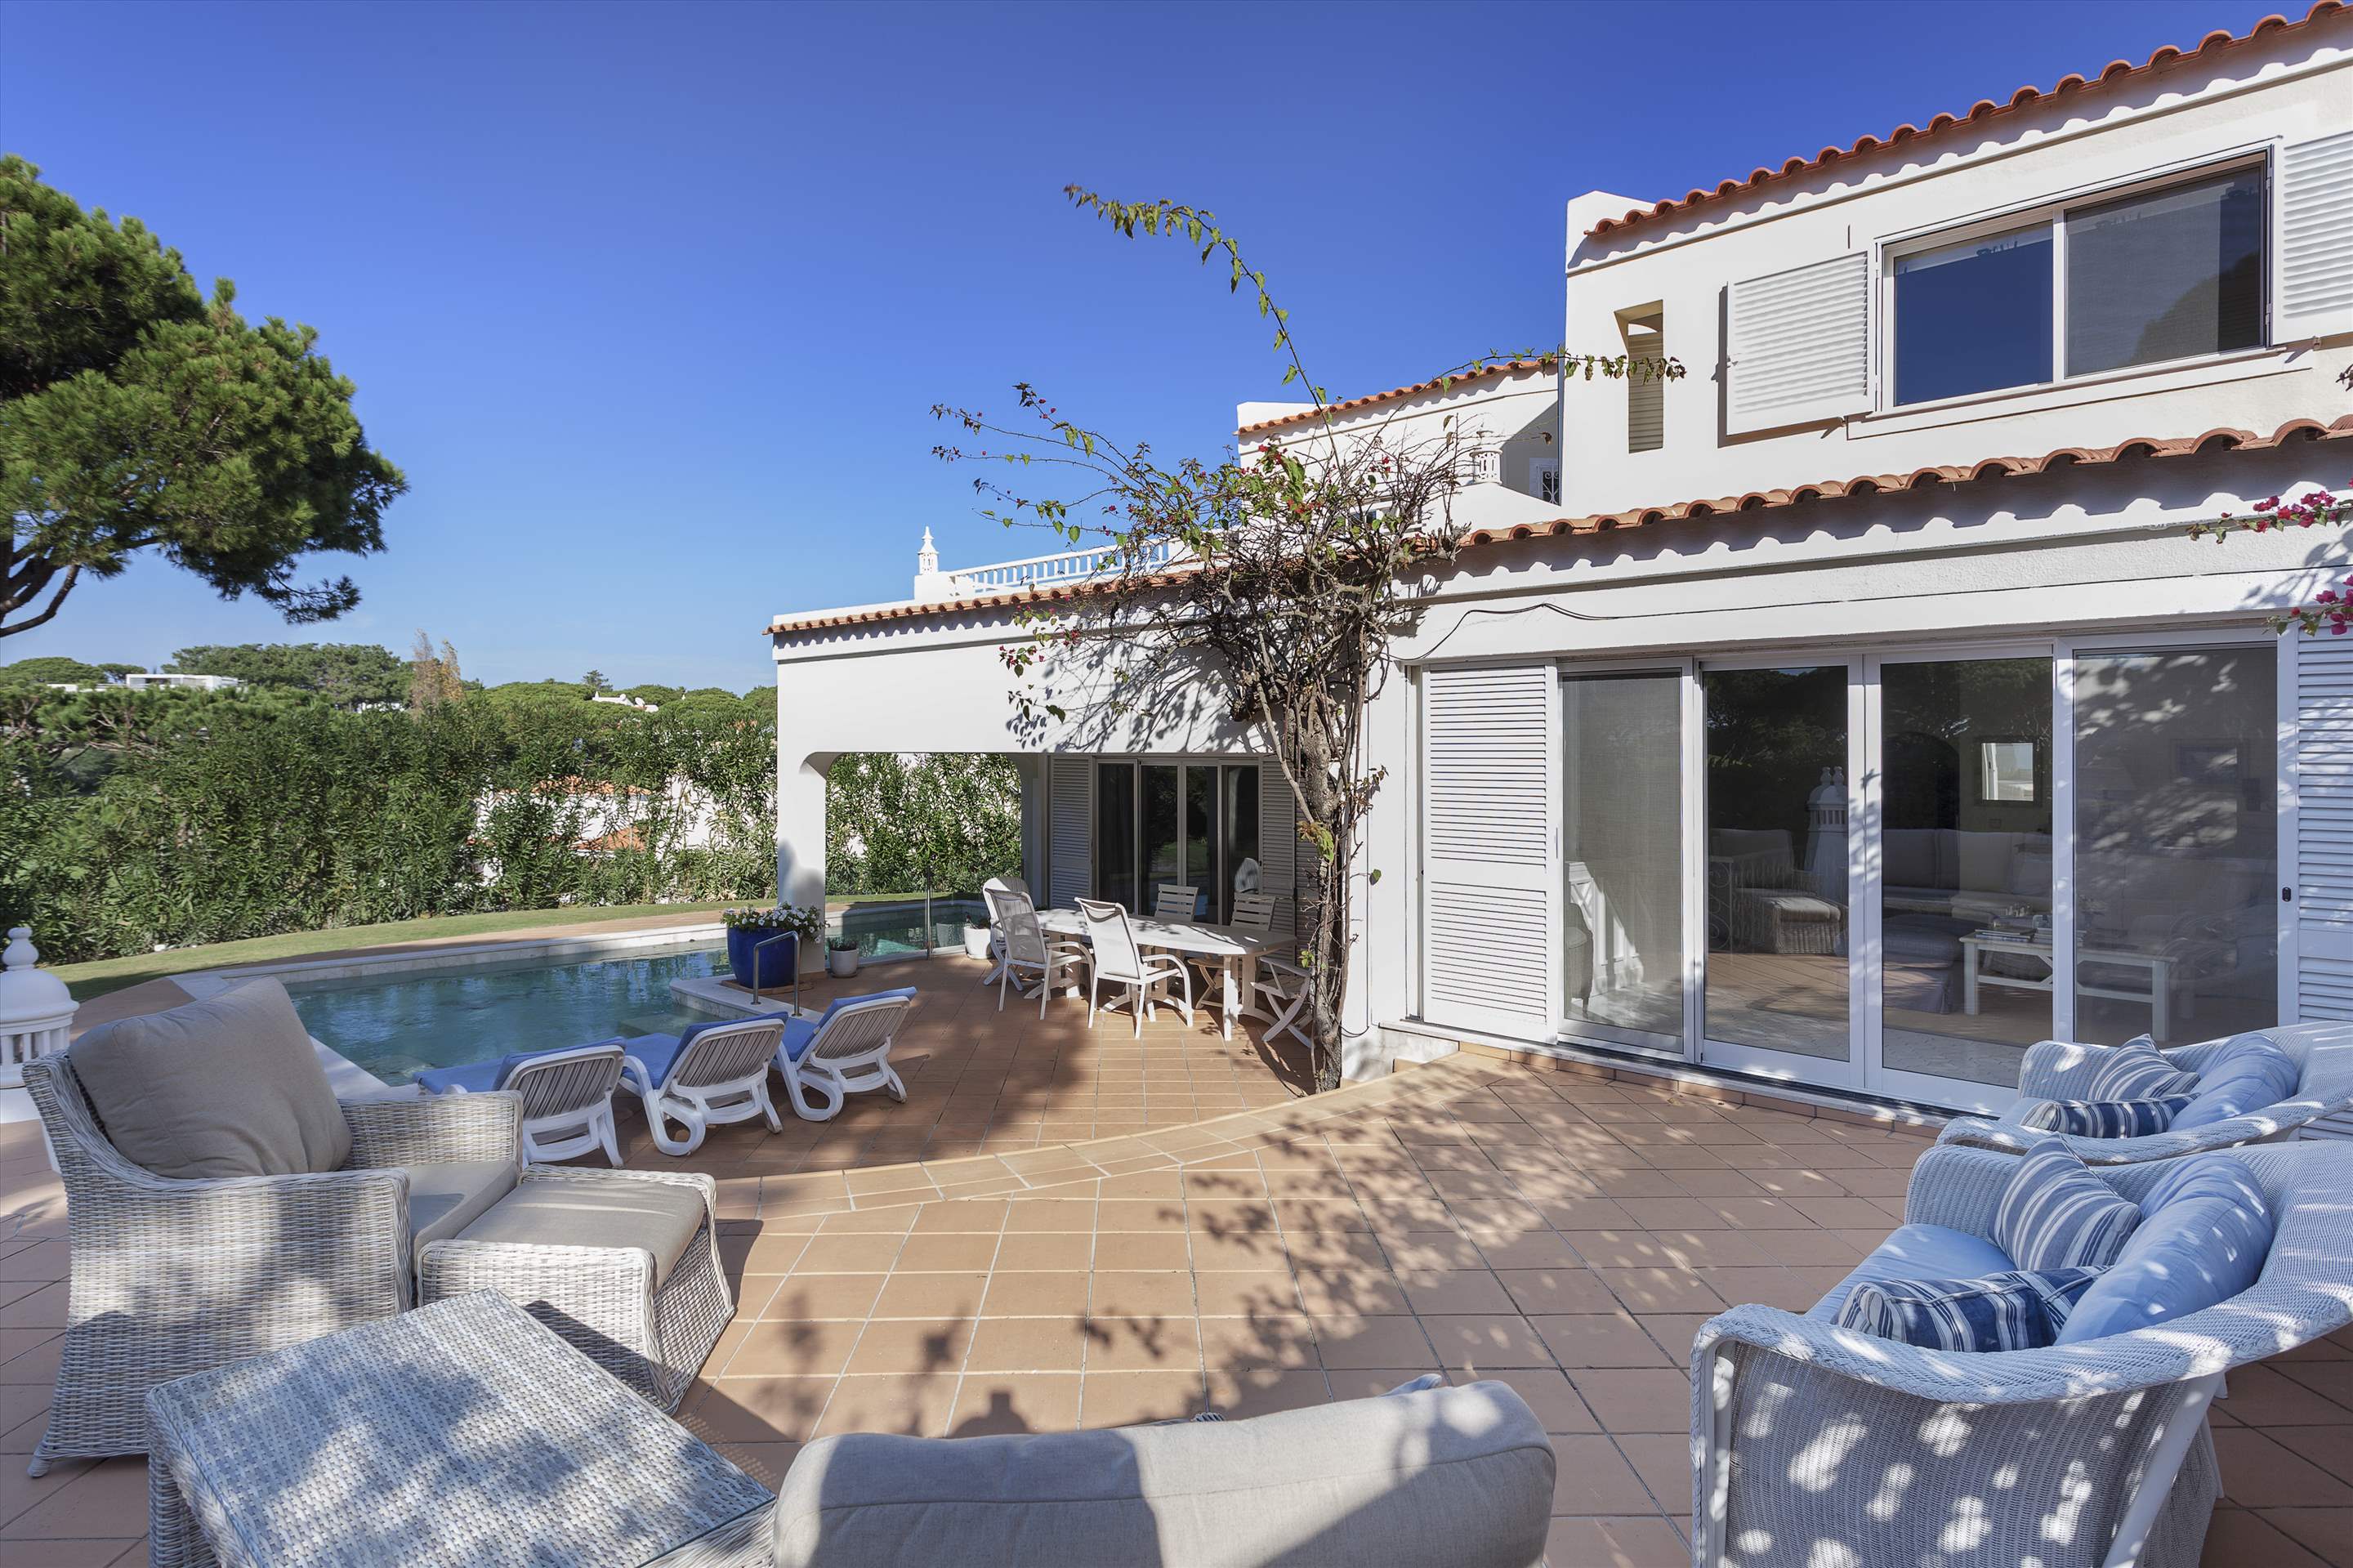 Villa Cascata, 4 Bedroom, 4 bedroom villa in Vale do Lobo, Algarve Photo #7